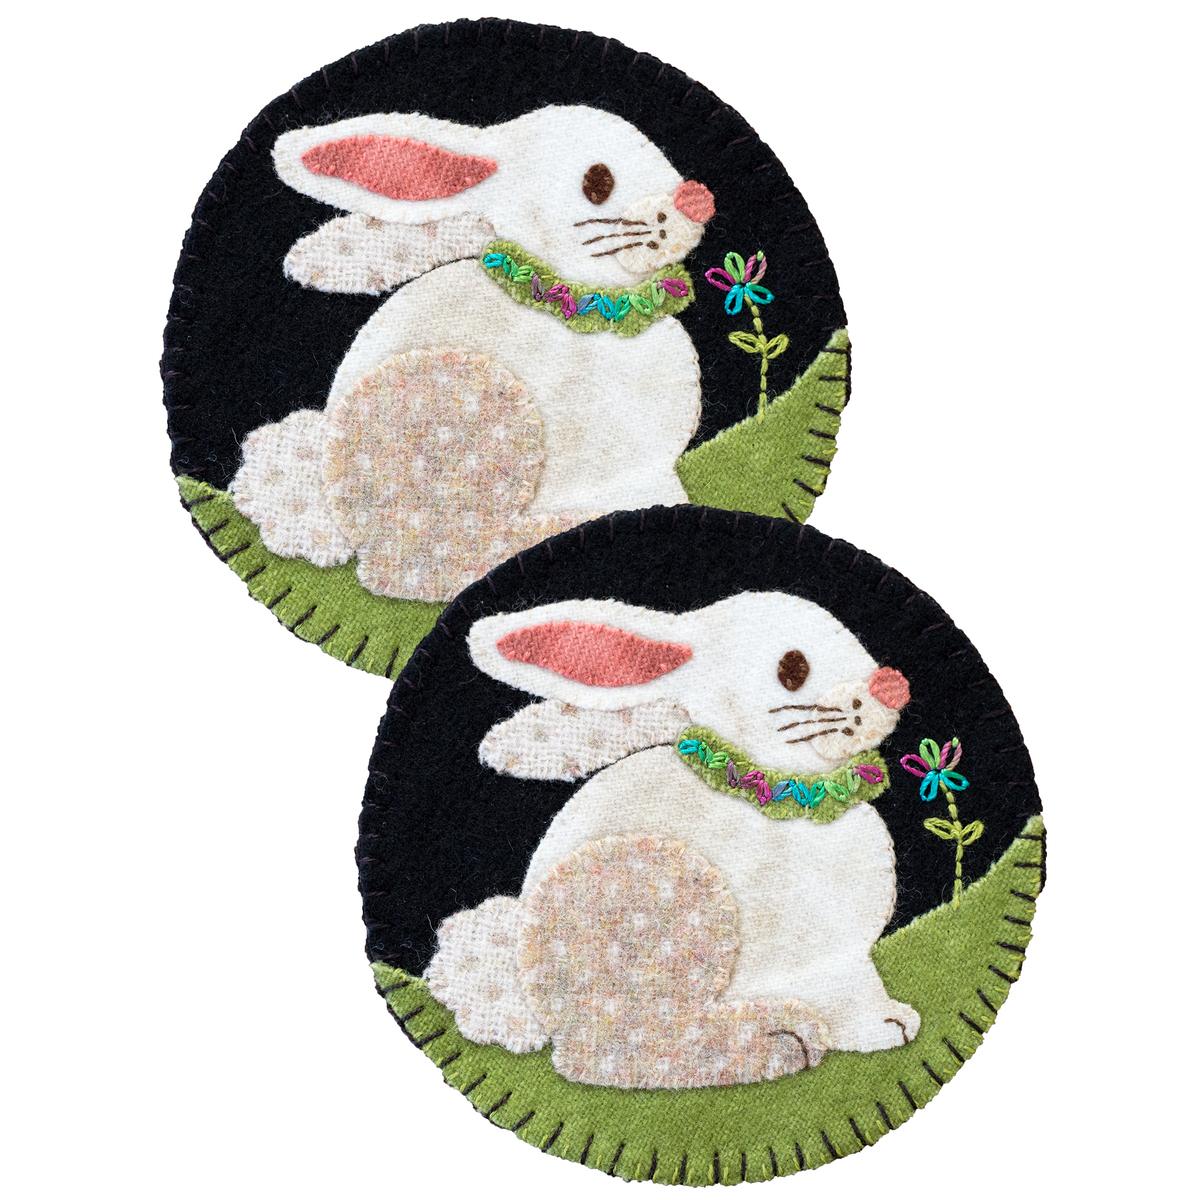 Easter Bunny Mug – Simpli Danni Creations